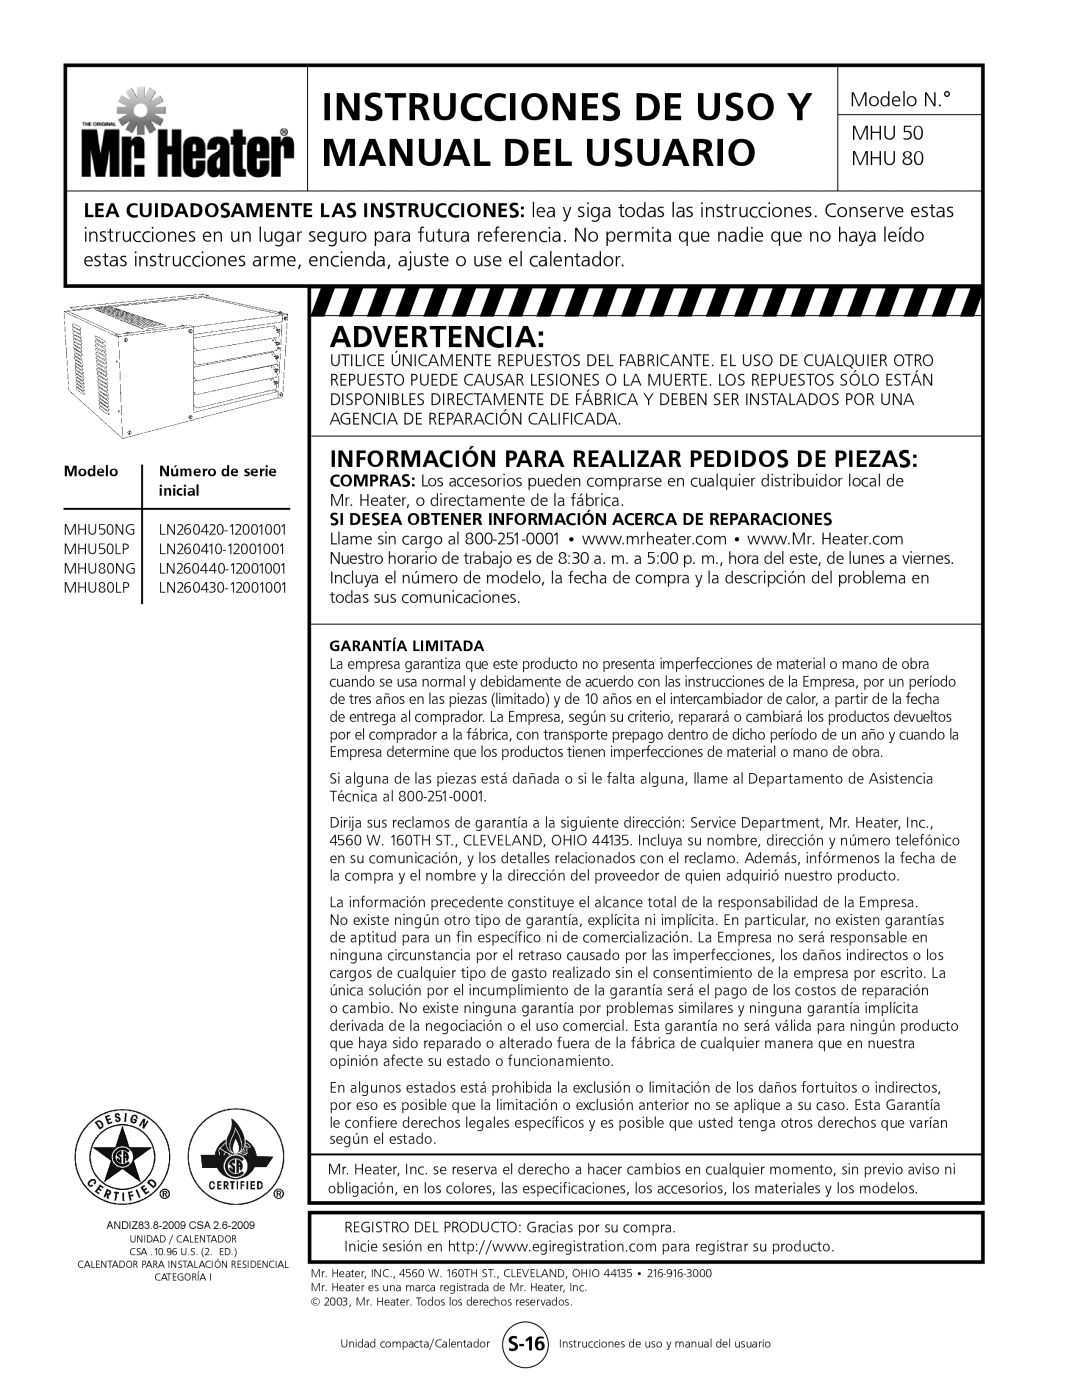 Mr. Heater MHU 50 Advertencia, Información Para Realizar Pedidos De Piezas, Instrucciones De Uso Y Manual Del Usuario 